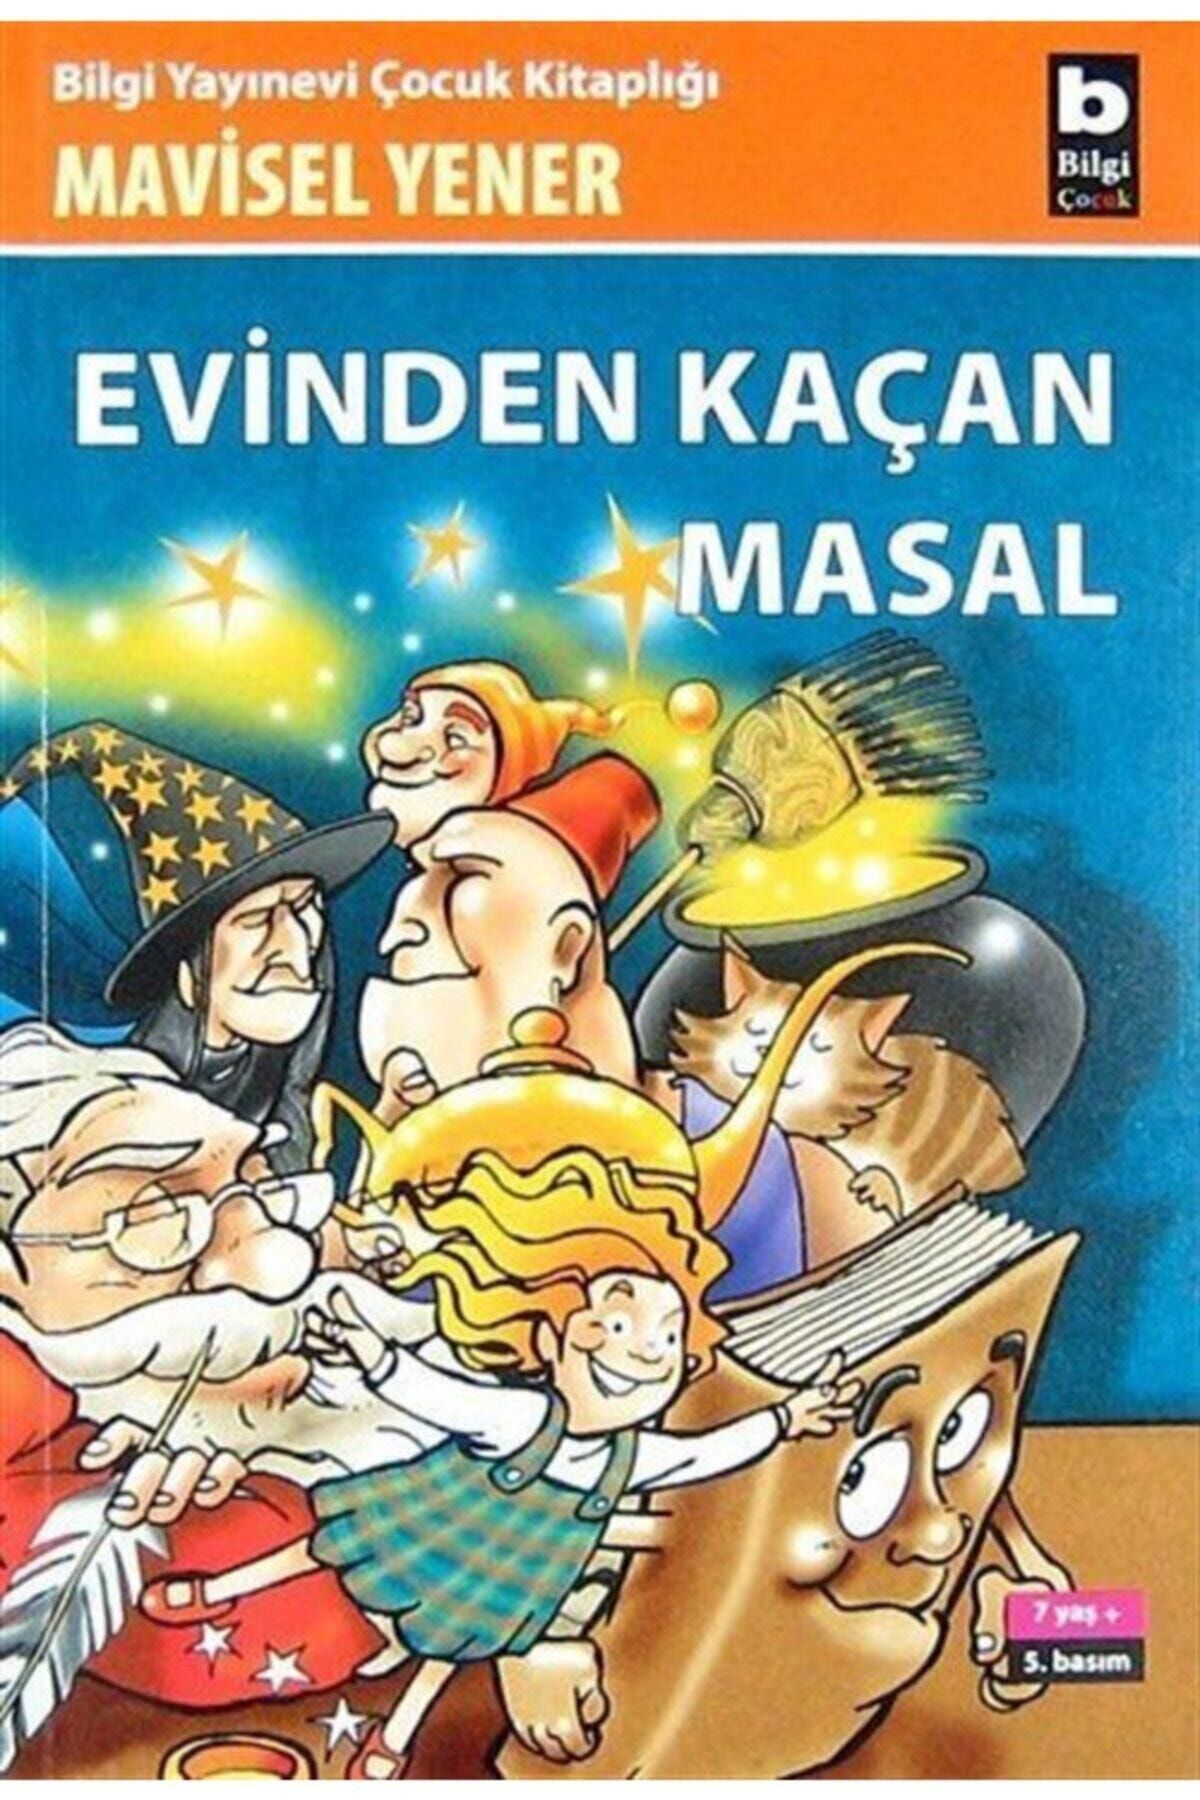 Bilgi Yayınları Evinden Kaçan Masal - Mavisel Yener - Çocuk